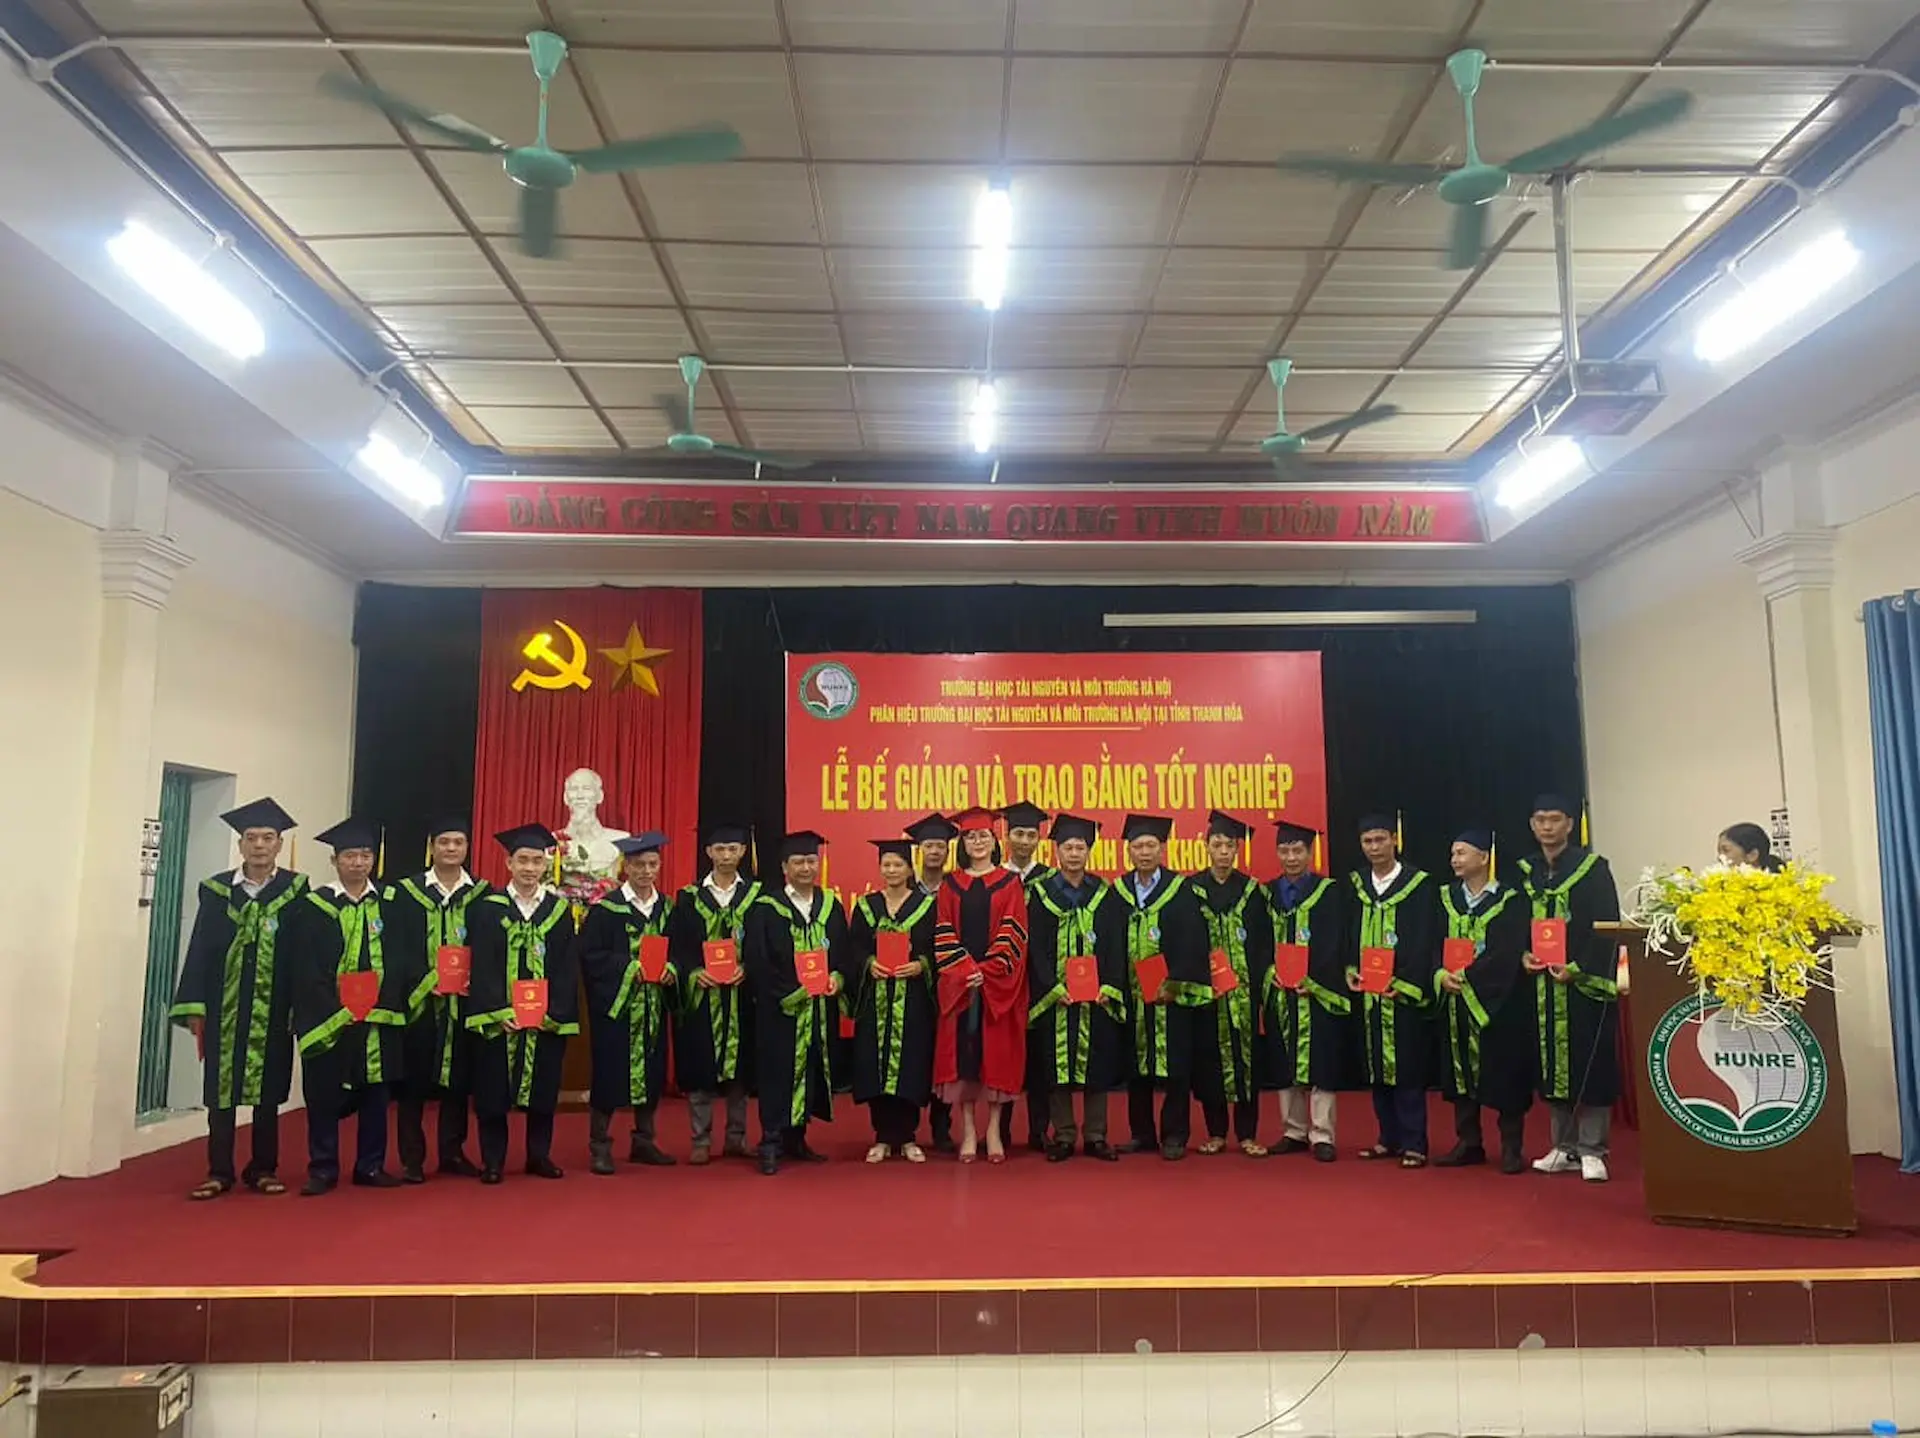 Phân hiệu trường Đại học Tài nguyên và Môi trường Hà Nội tại Thanh Hóa